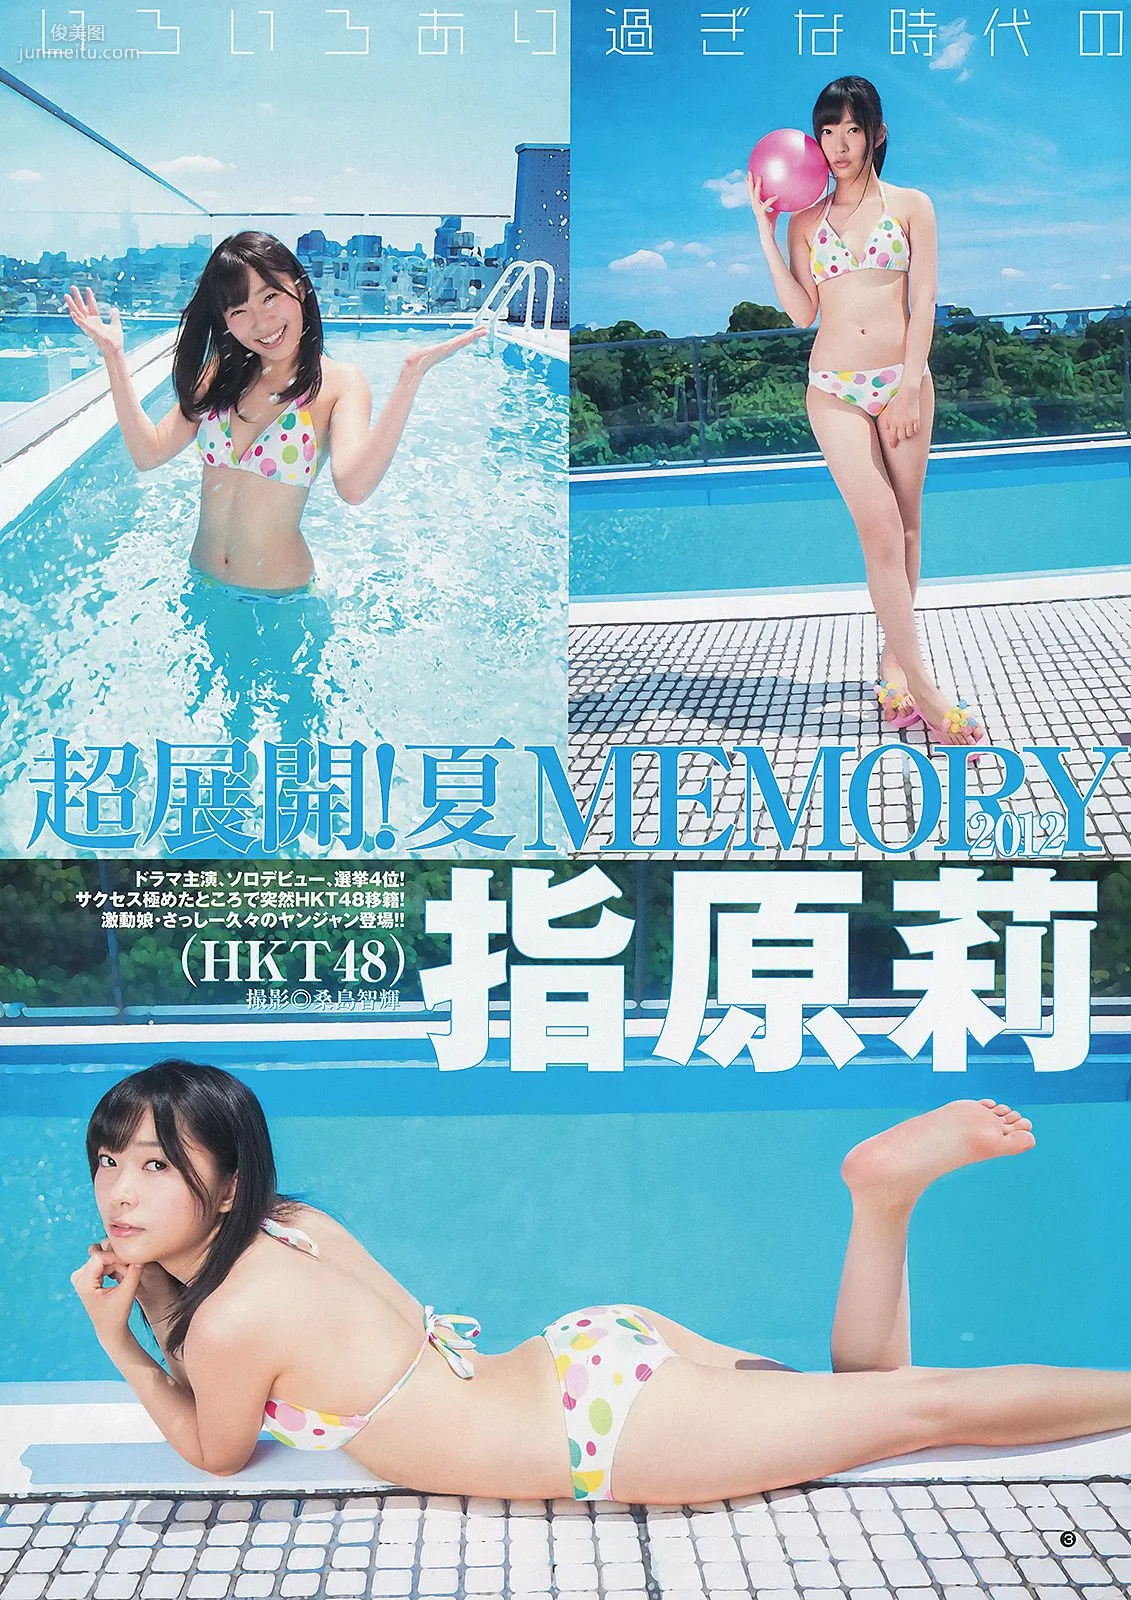 指原莉乃 NMB48(吉田朱里・矢倉楓子) 日南響子 [Weekly Young Jump] 2012年No.43 写真杂志4